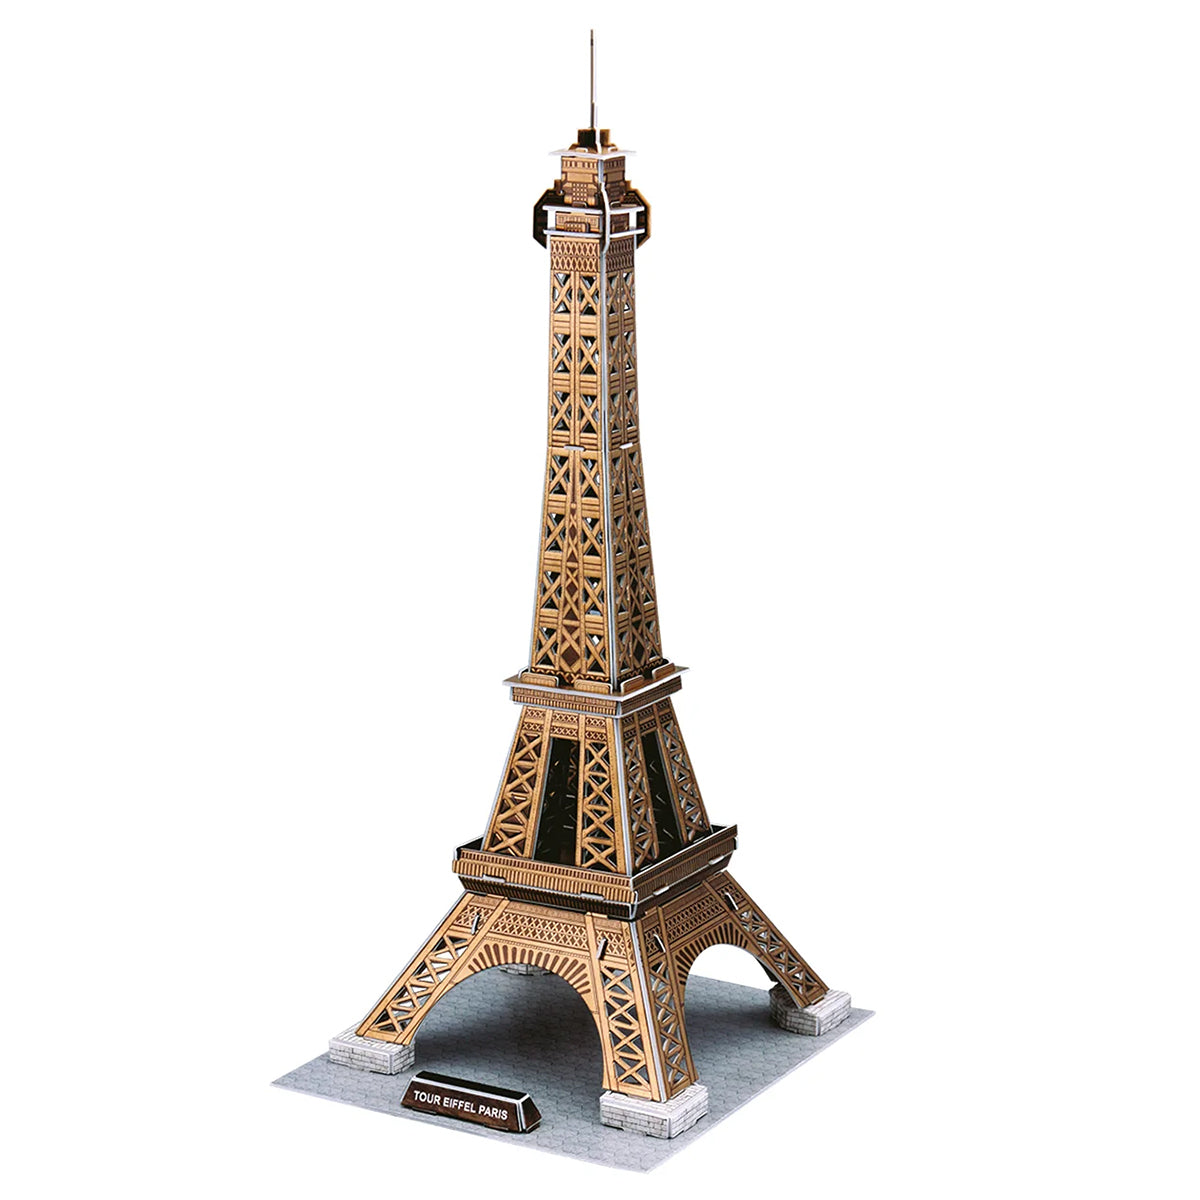 Revell - Mini 3D Puzzle Tour Eiffel